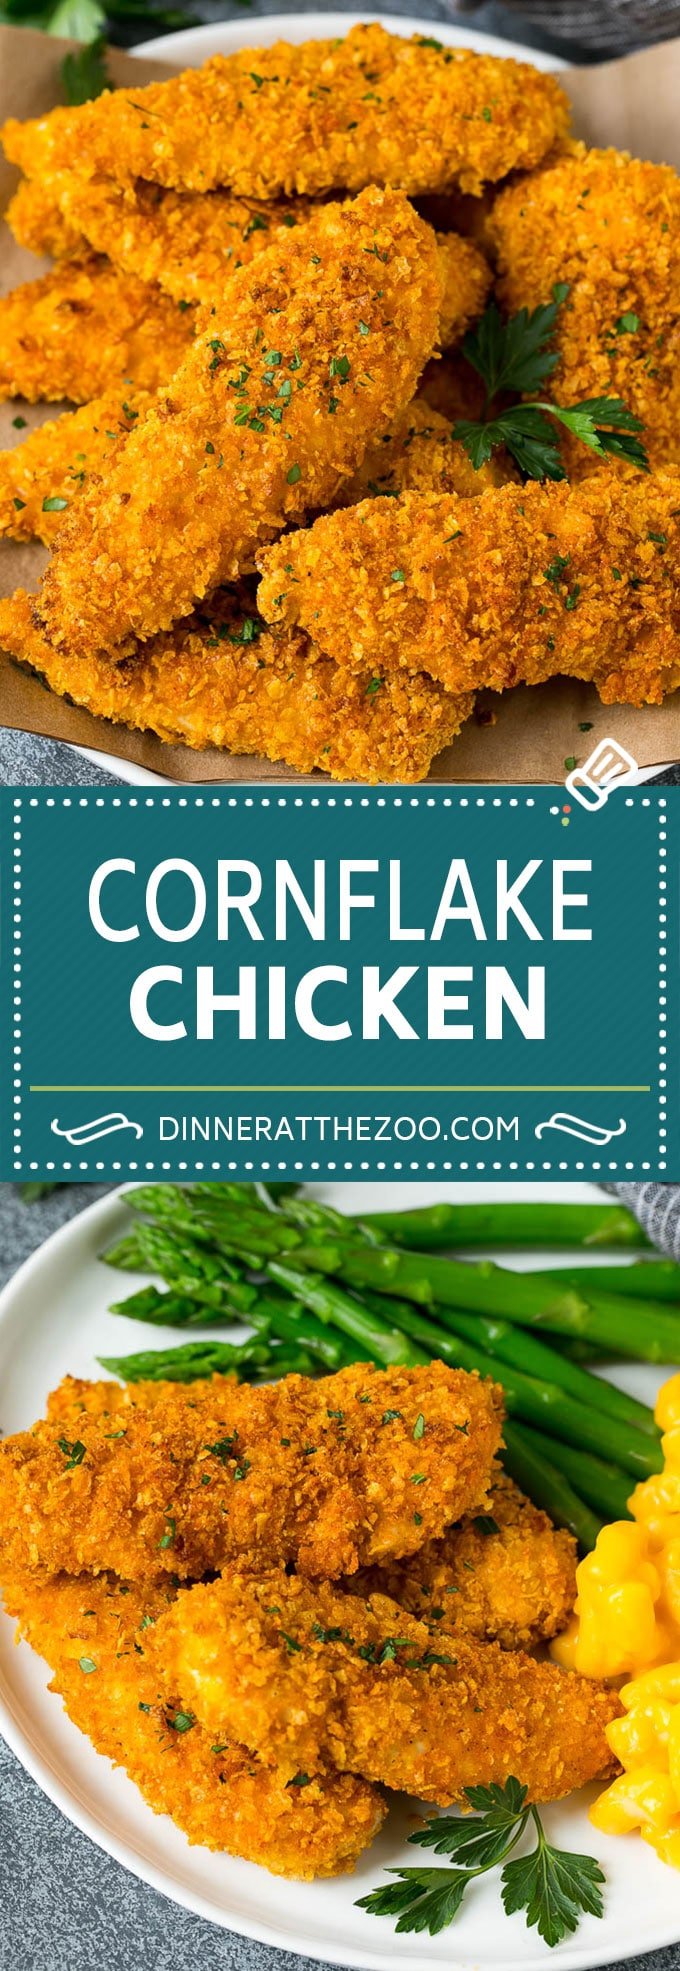 Cornflake Chicken Recipe | Chicken Fingers #chicken #dinner #dinneratthezoo